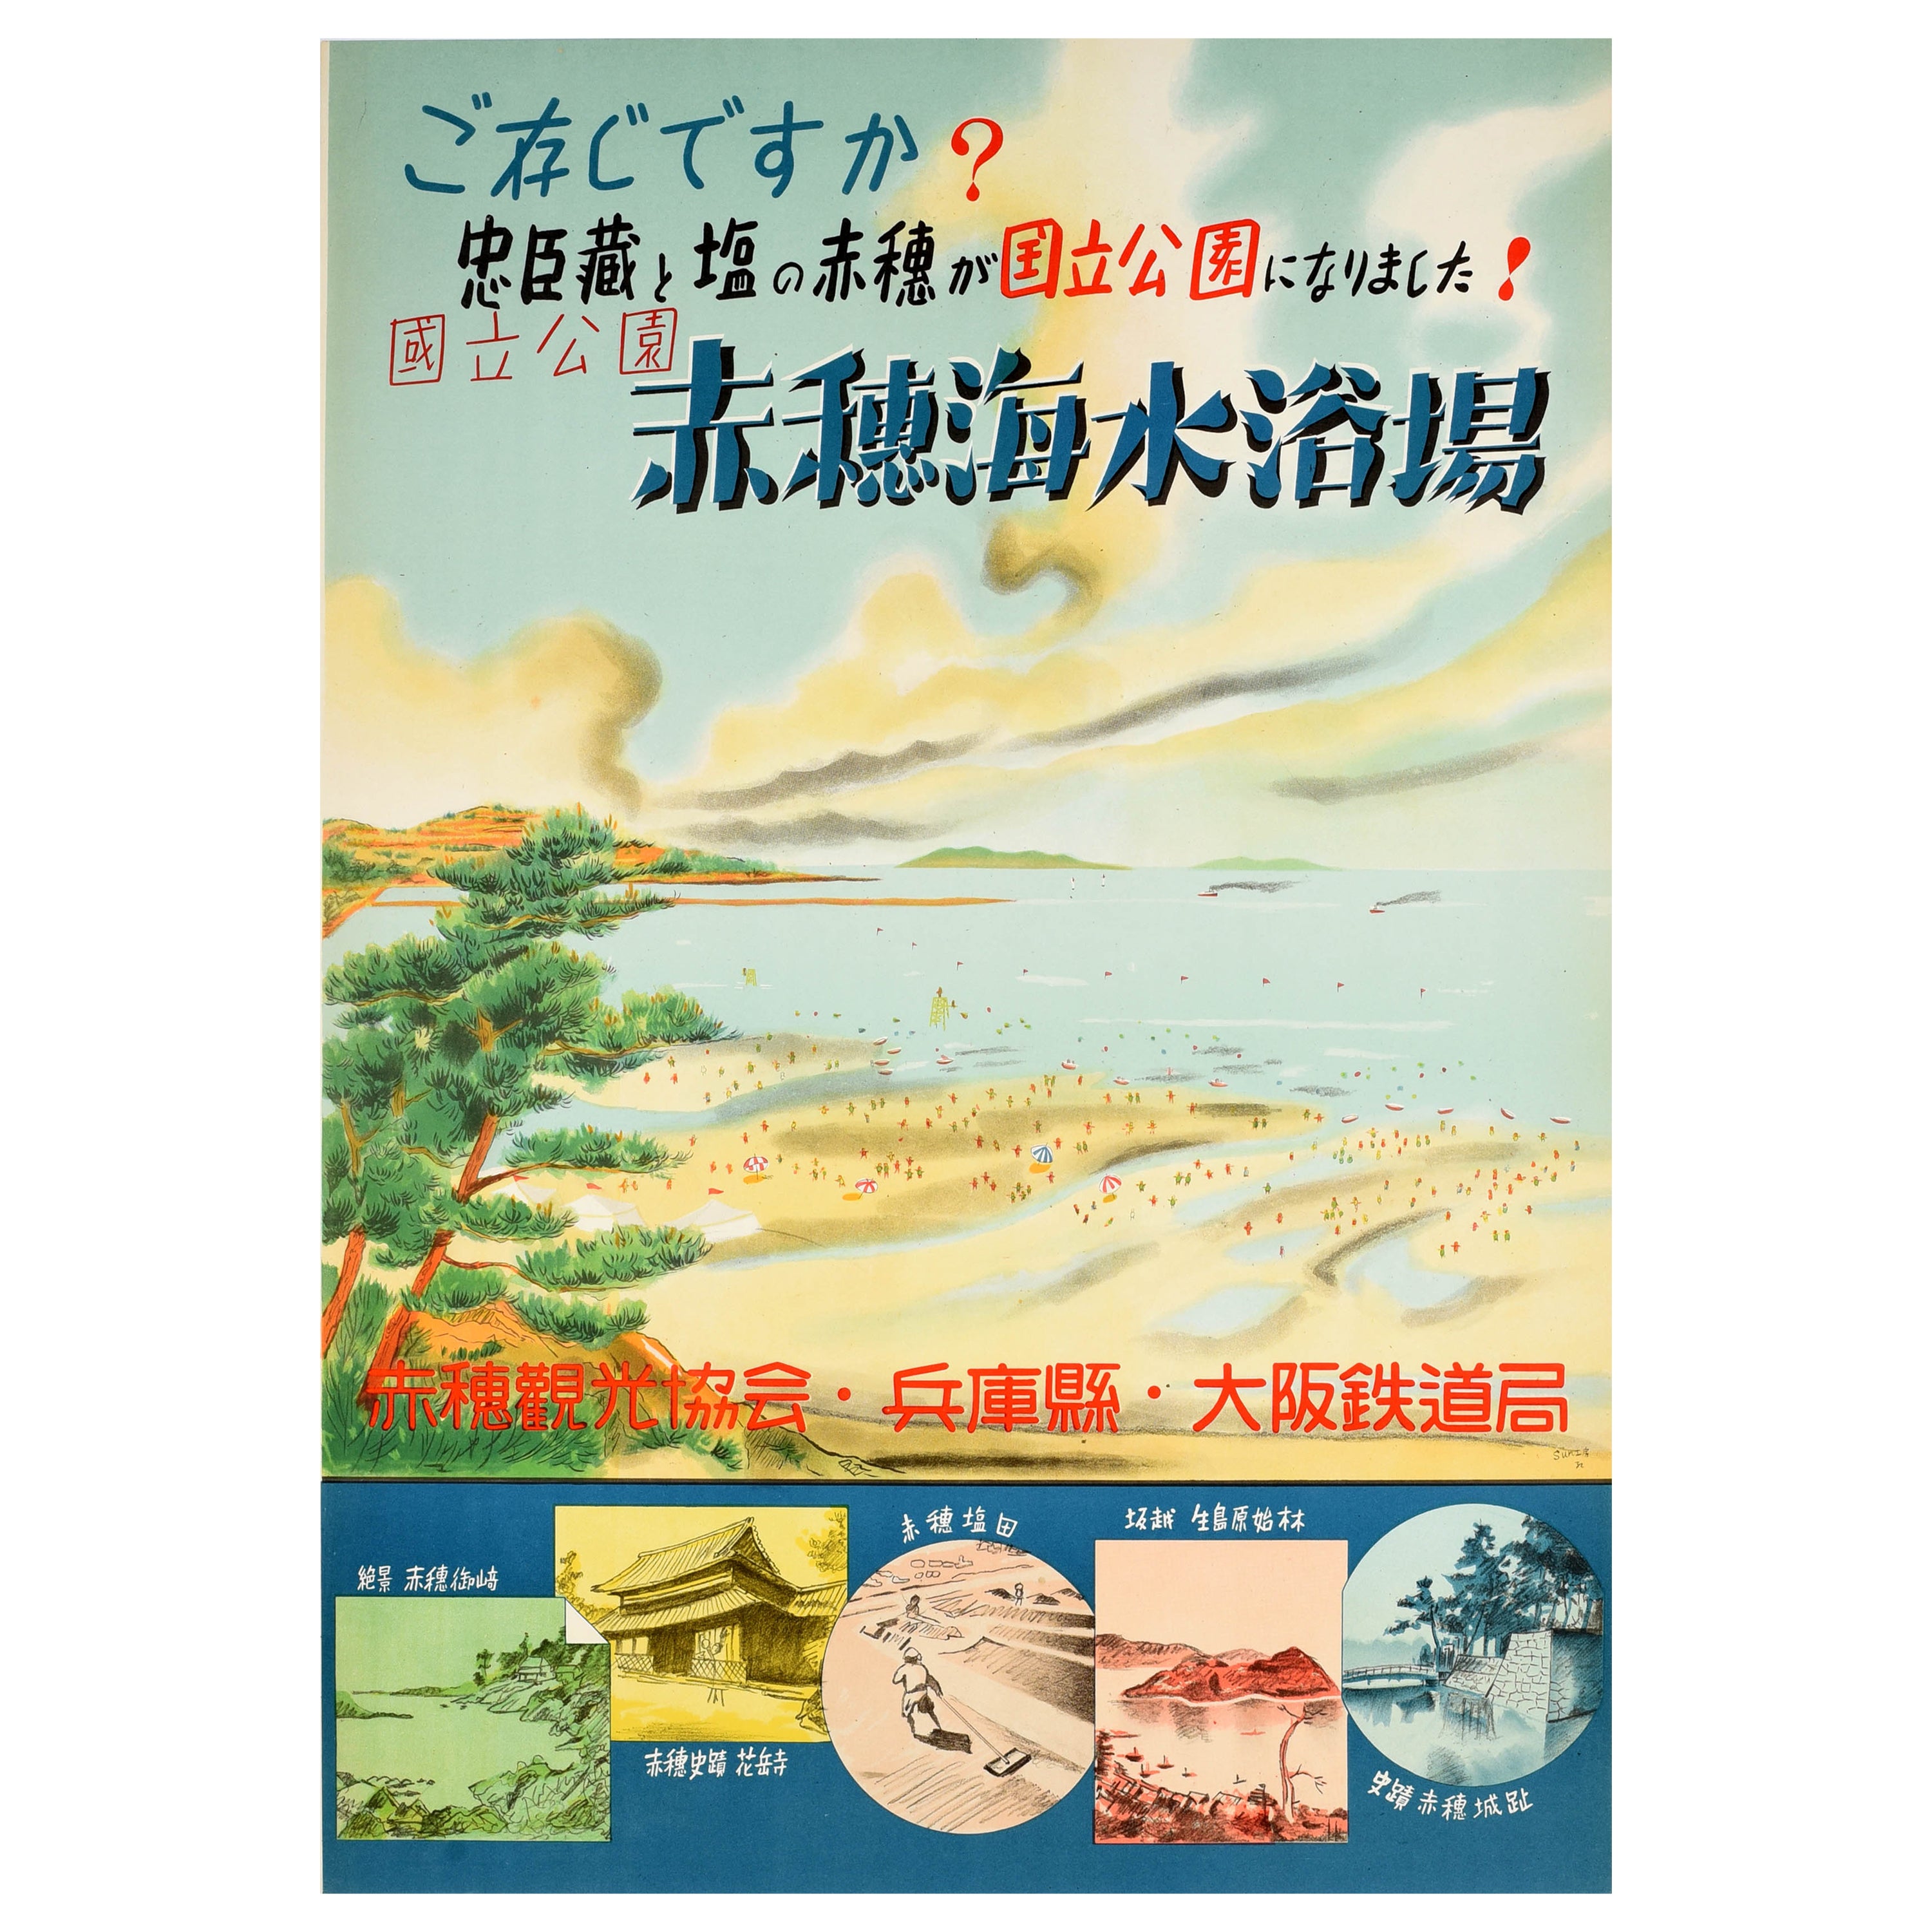 Affiche rétro originale de voyage, plage de Fukuura, paysage japonais, Vue de l'île